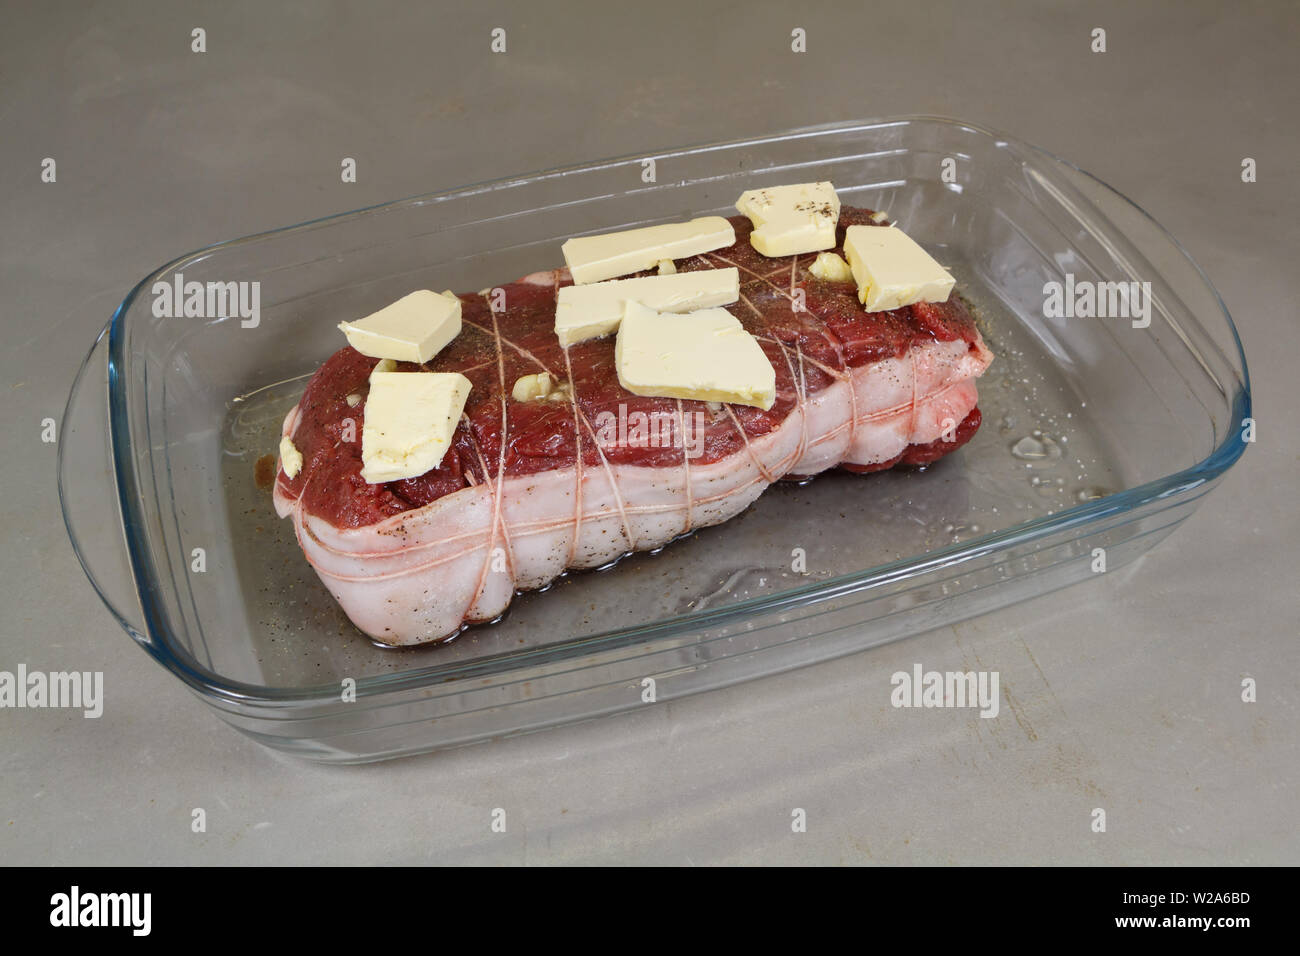 Rôti de bœuf cru avec de la margarine sur un plat en verre avant la cuisson Banque D'Images